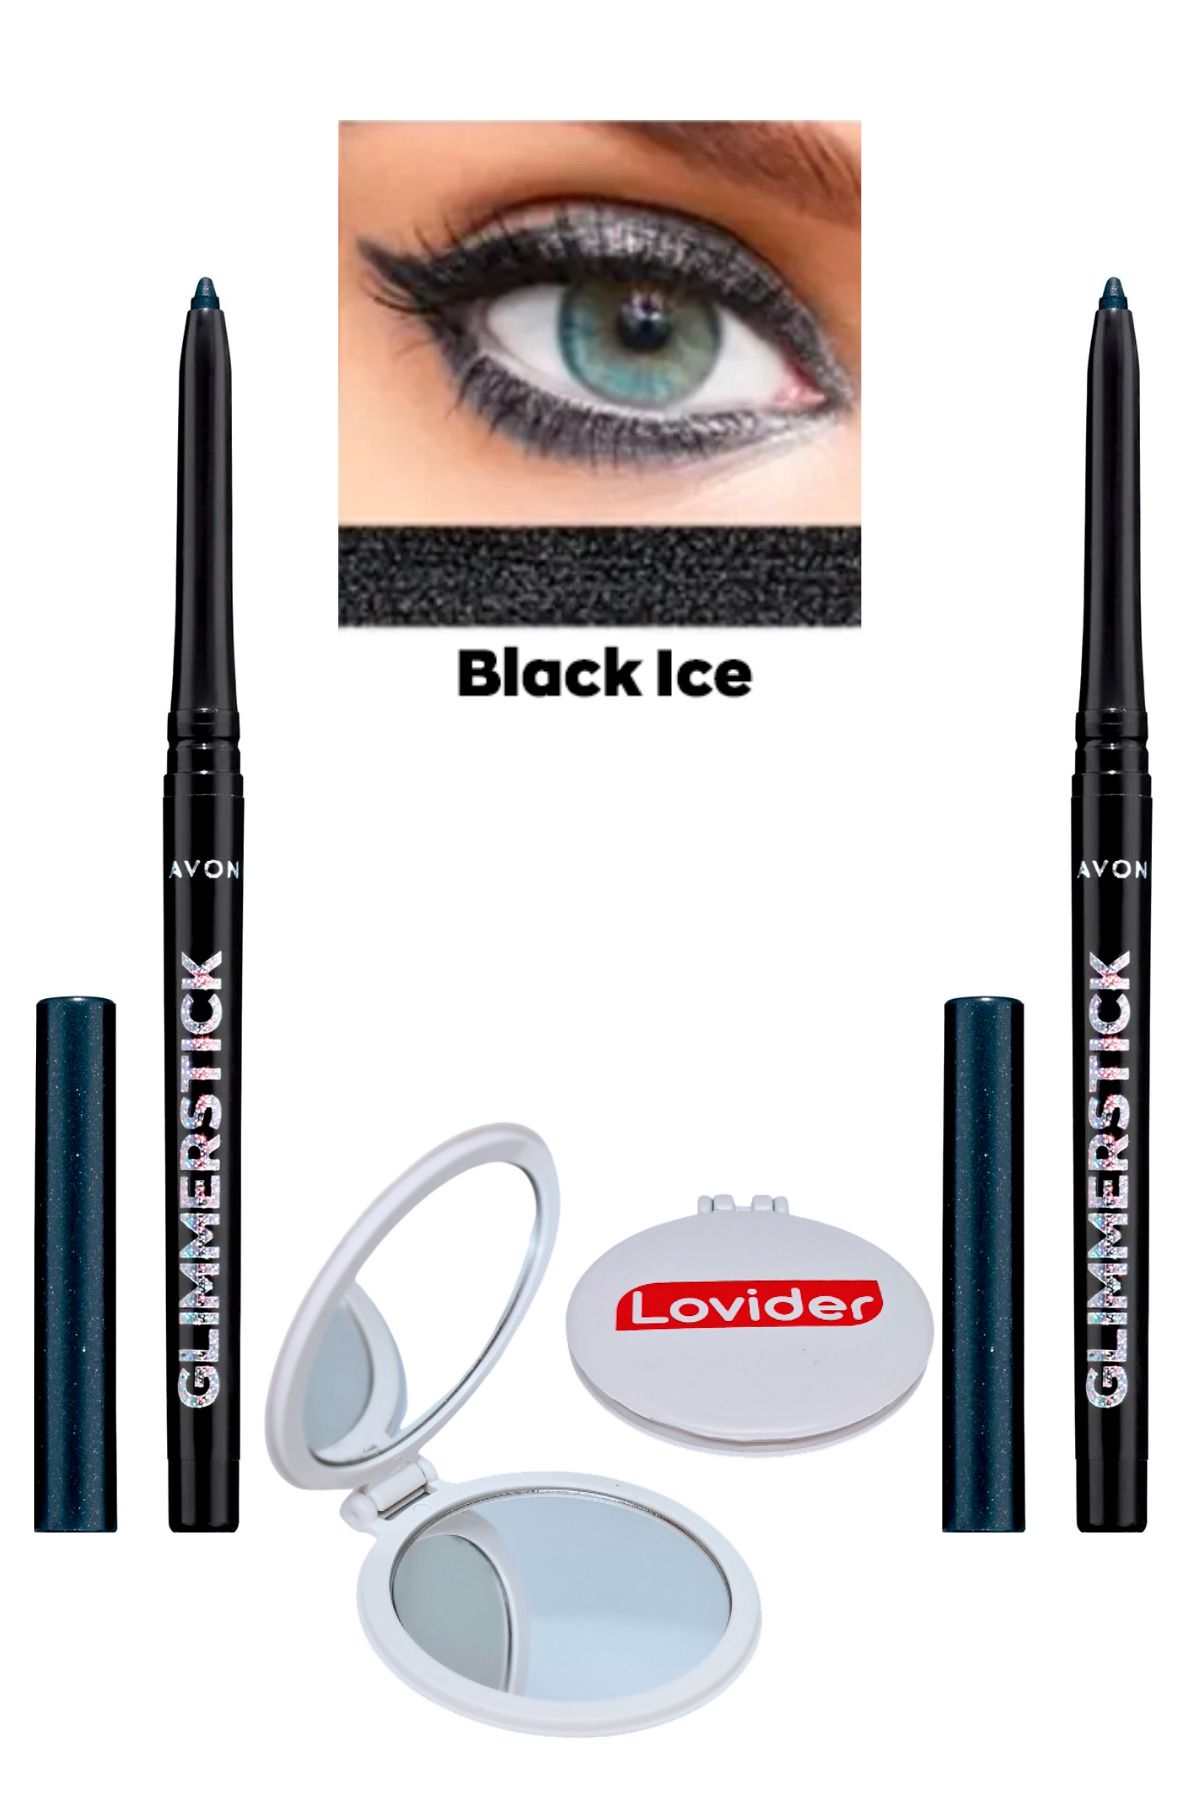 Avon Glimmerstick Asansörlü Göz Kalemi Pırıltılı - Black Ice 2'li + Lovider Cep Aynası Hediye